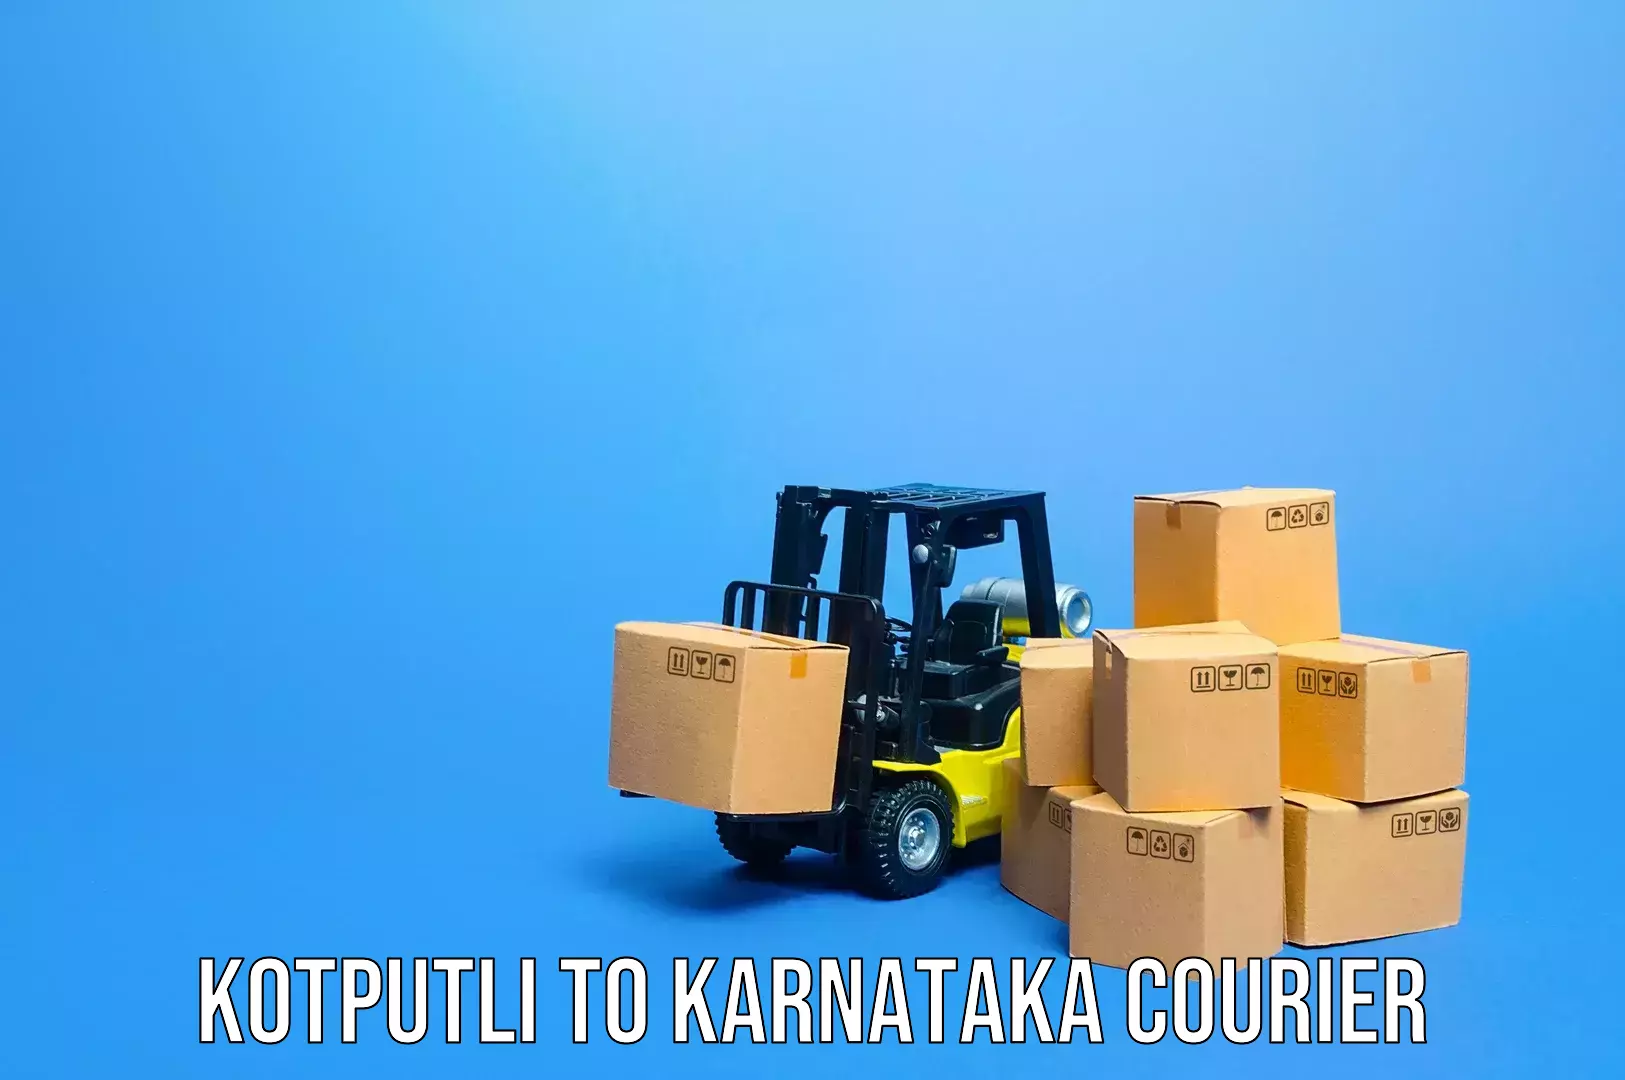 Emergency luggage shipping Kotputli to Dharmasthala